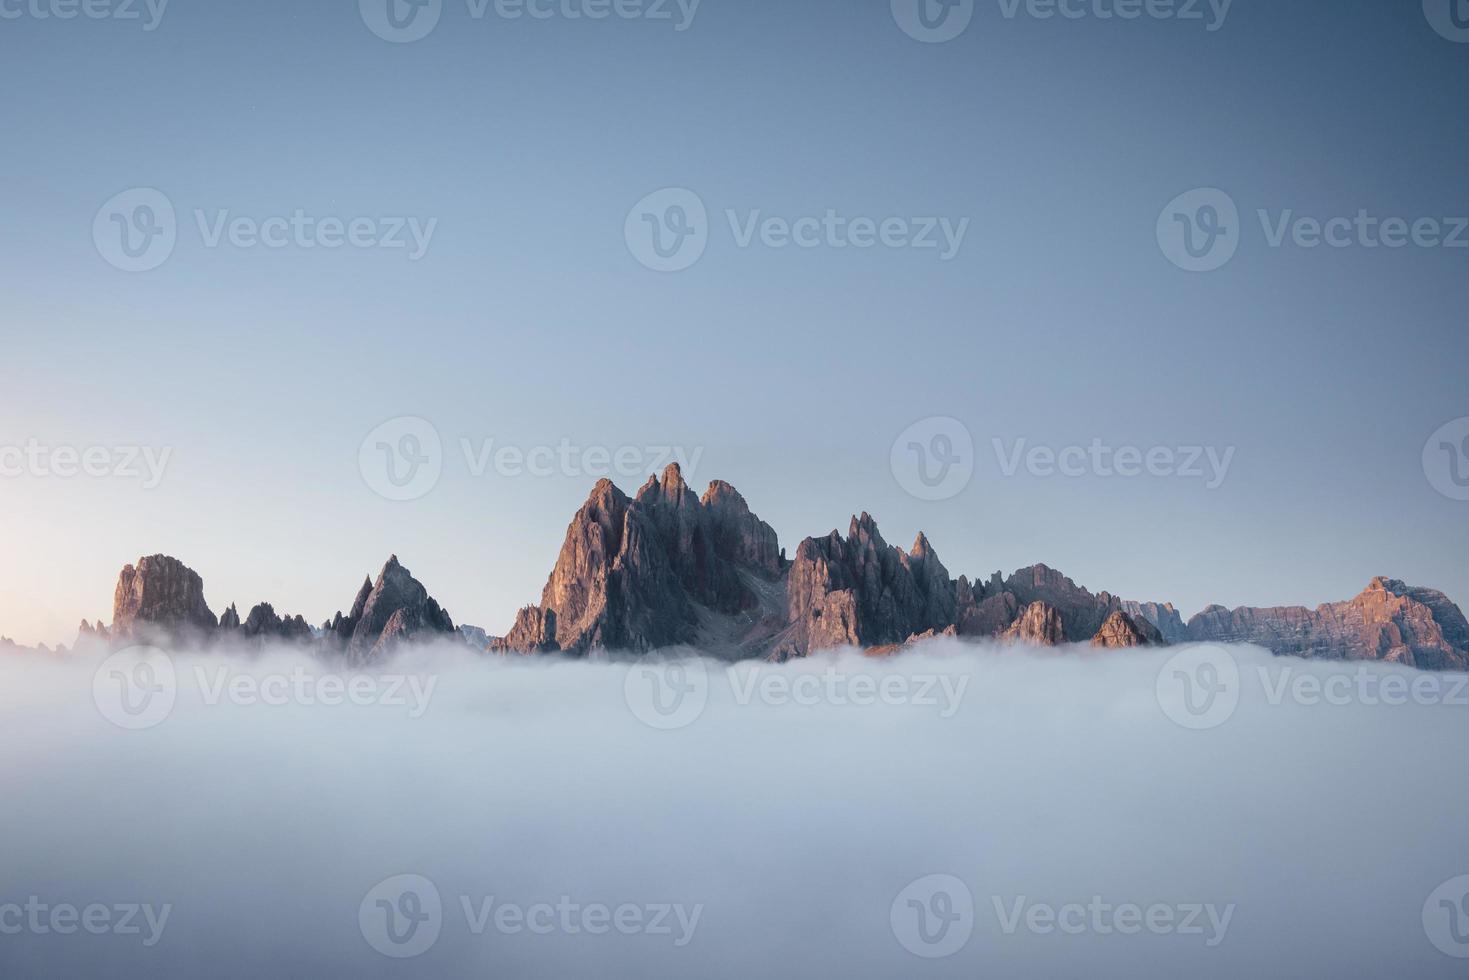 hermosas sombras. los picos de las montañas se sofocan por una espesa niebla que avanza. increíbles tomas de fotos